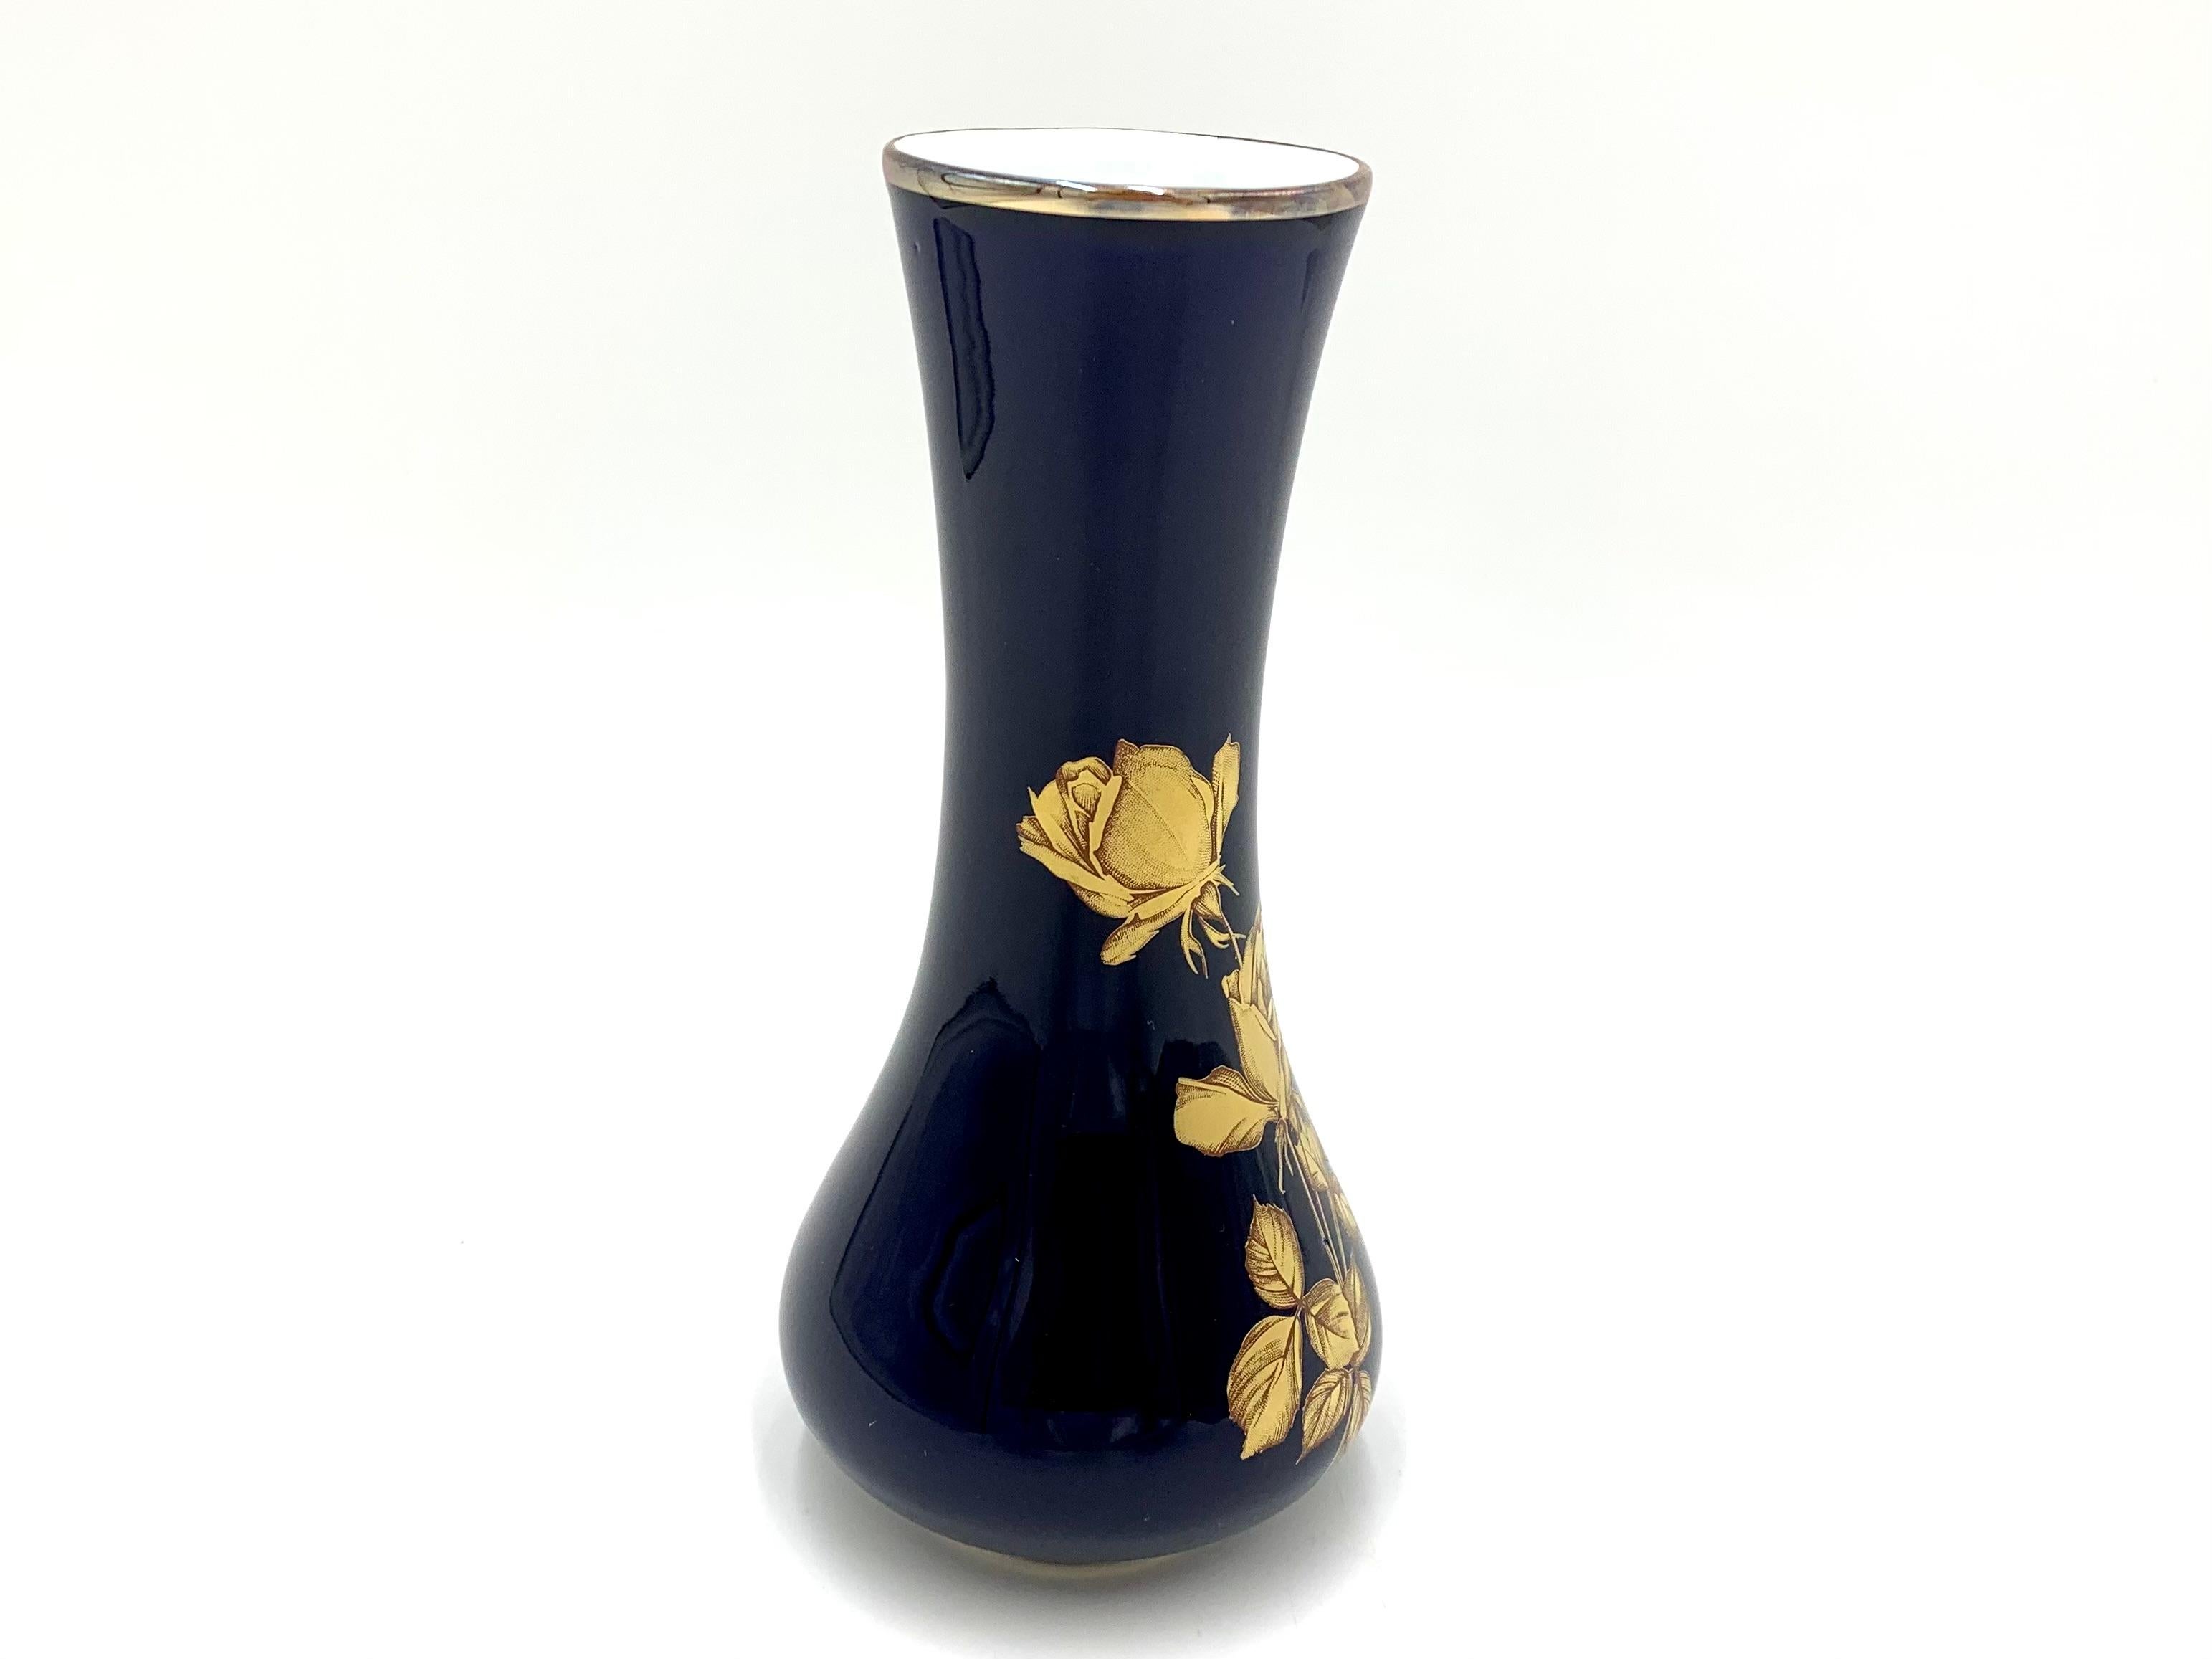 KPM Bavaria porcelain vase.
Porcelain vase by KPM Bavaria.
Dimensions: height 21 cm / diameter 9.5 cm
Very good condition. No damage.





